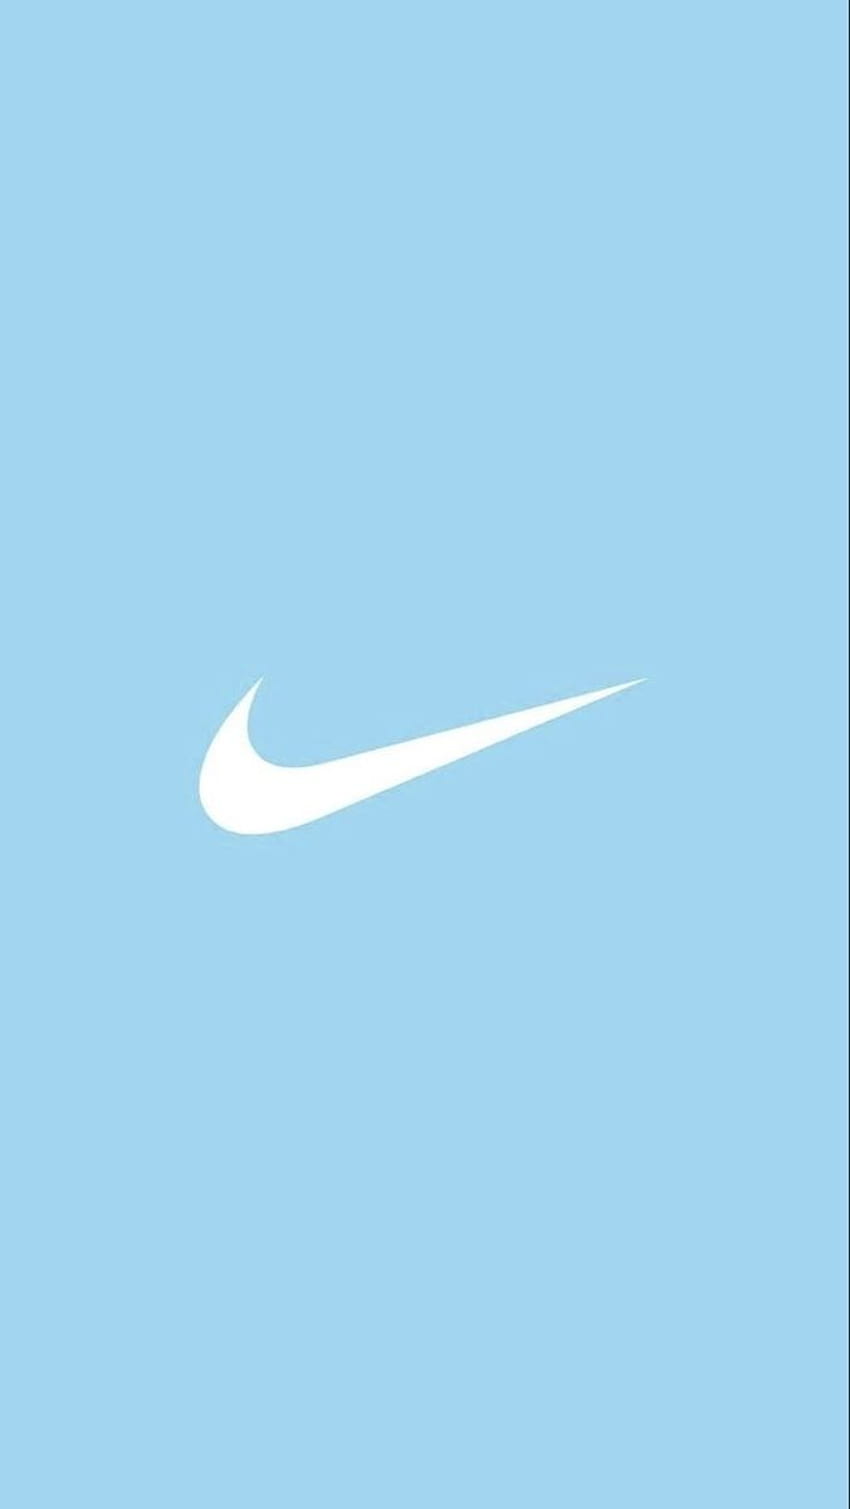 Mê hoặc bởi thế giới nền nền tảng Nike đầy ấn tượng? Thử xem qua hình nền Nike sẽ khiến bạn mê mẩn với những đường nét tinh tế, ngầu và đậm phong cách riêng.